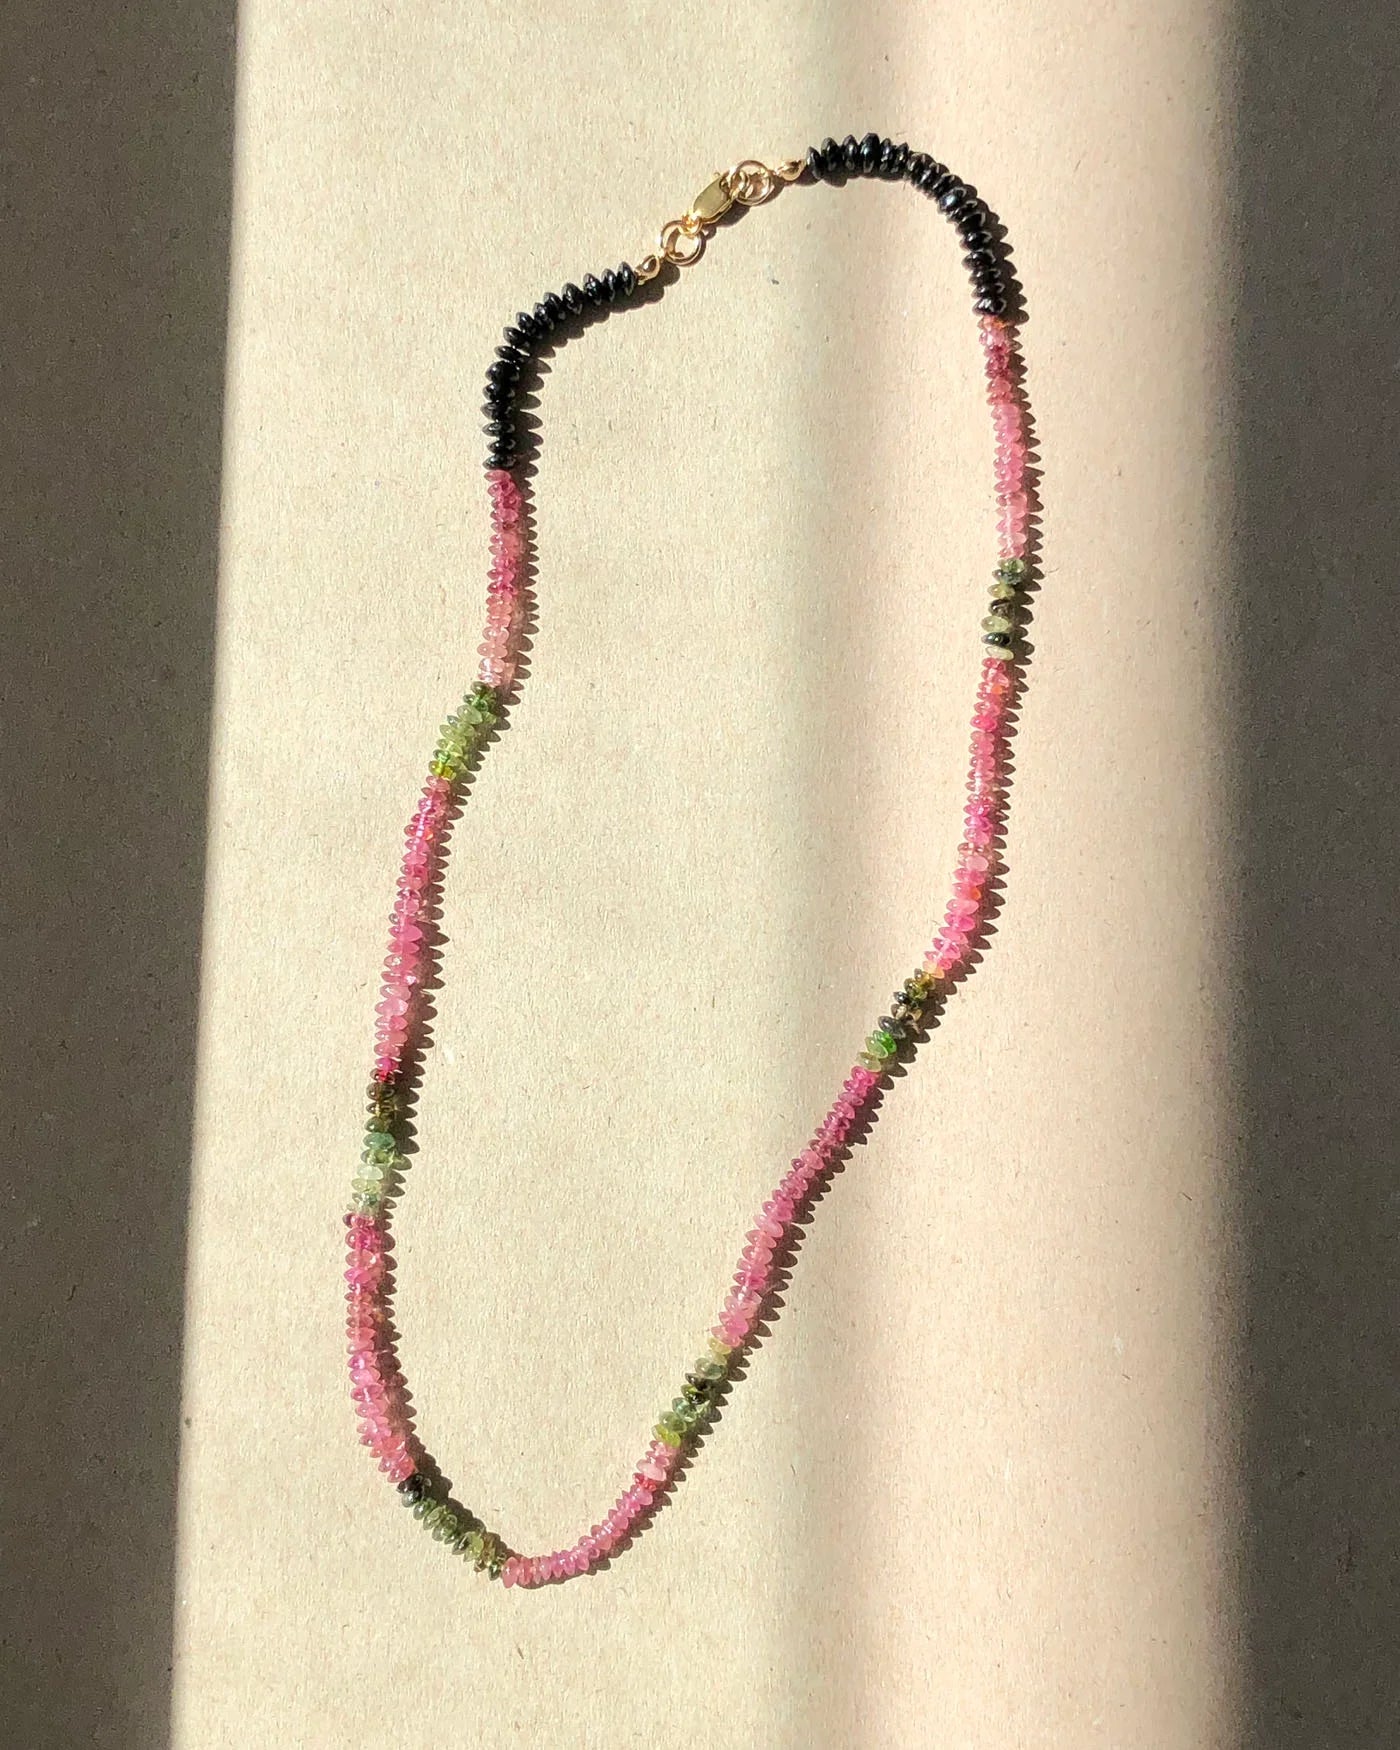 September Necklace